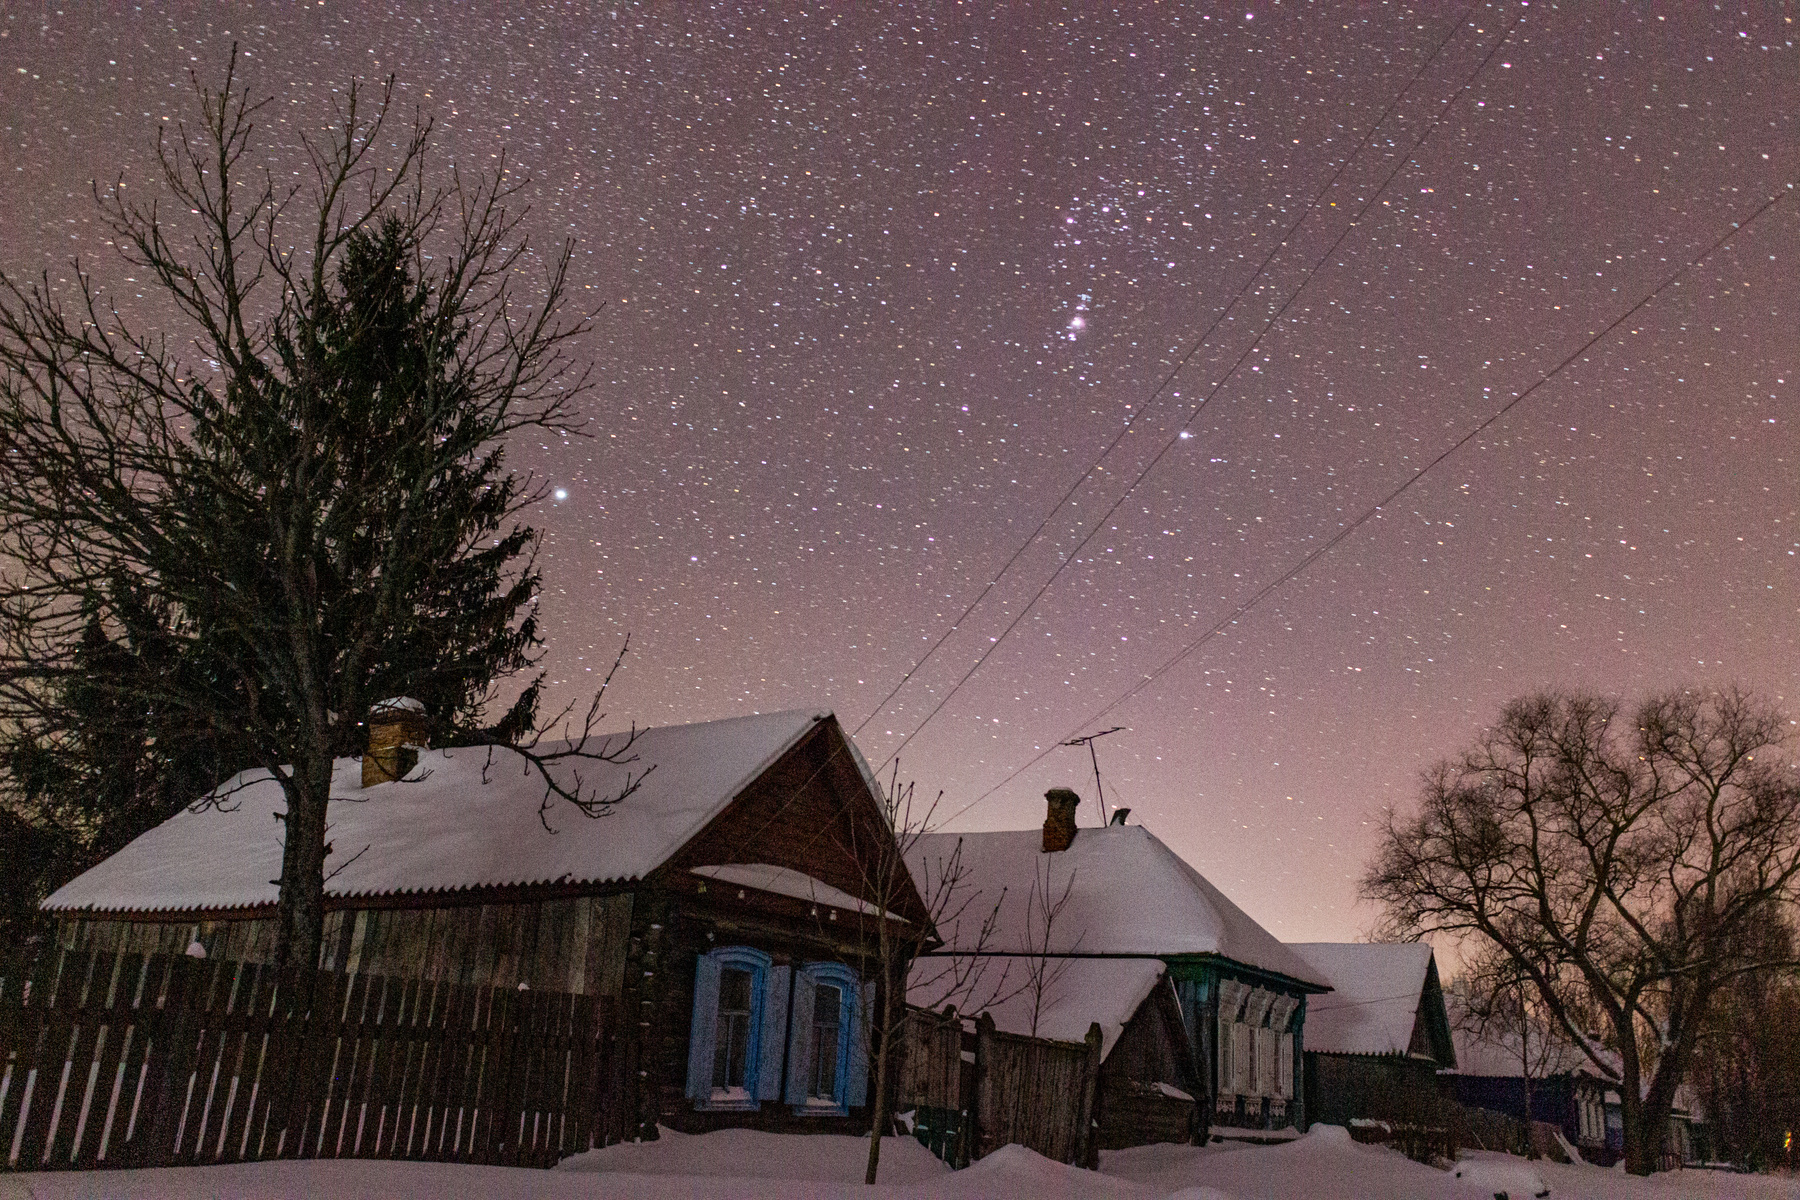 Тихо в деревне ночью Дом ночь звезды небо снег дерево ель зима